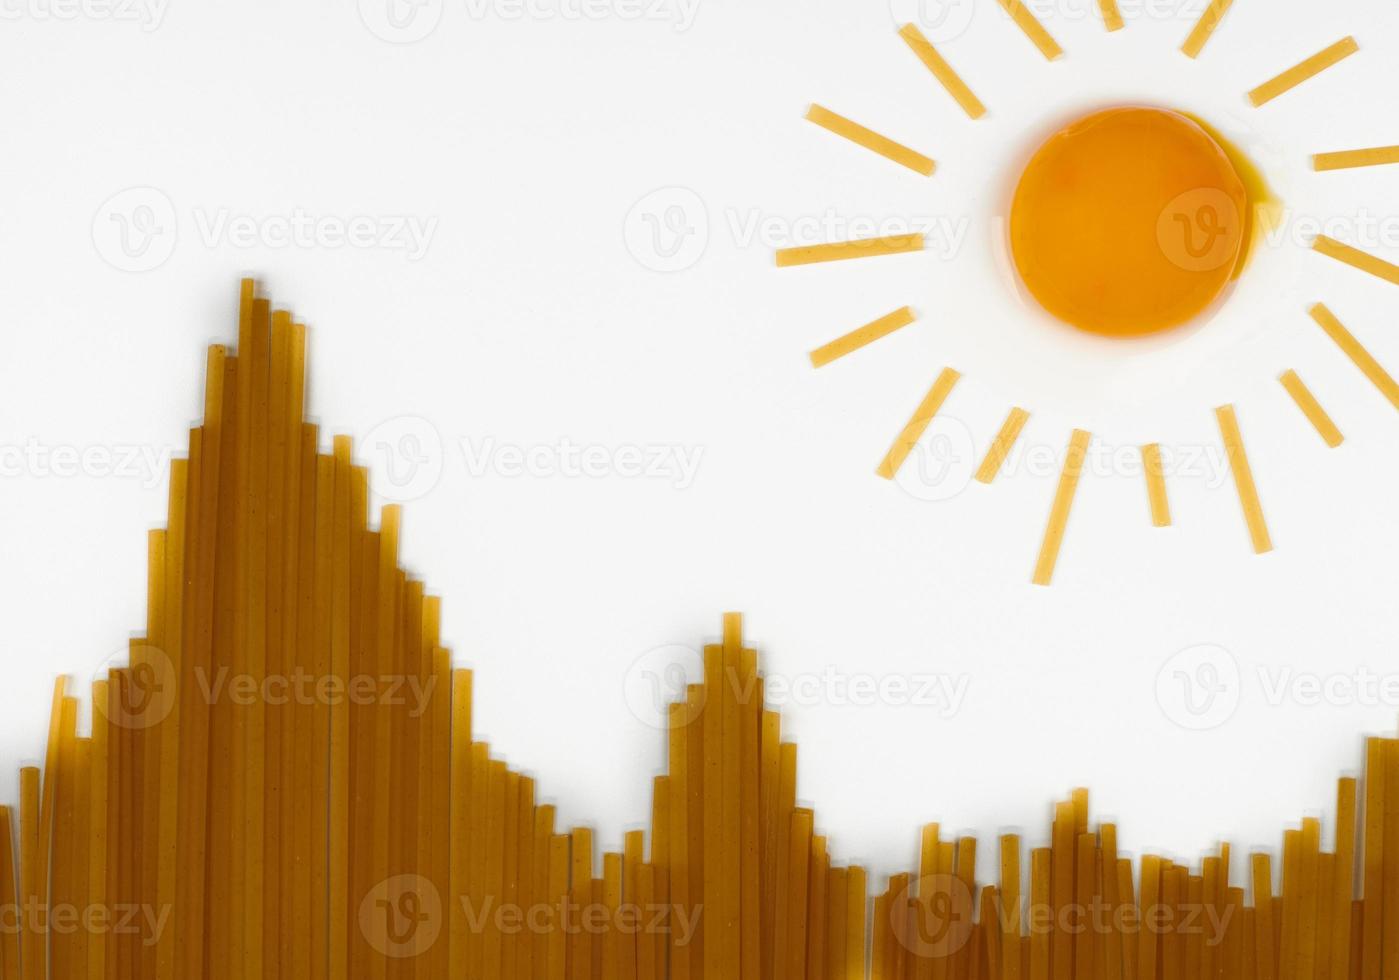 okokt spaghetti i form av kullar och ägg som Sol. resa mellanmål begrepp foto